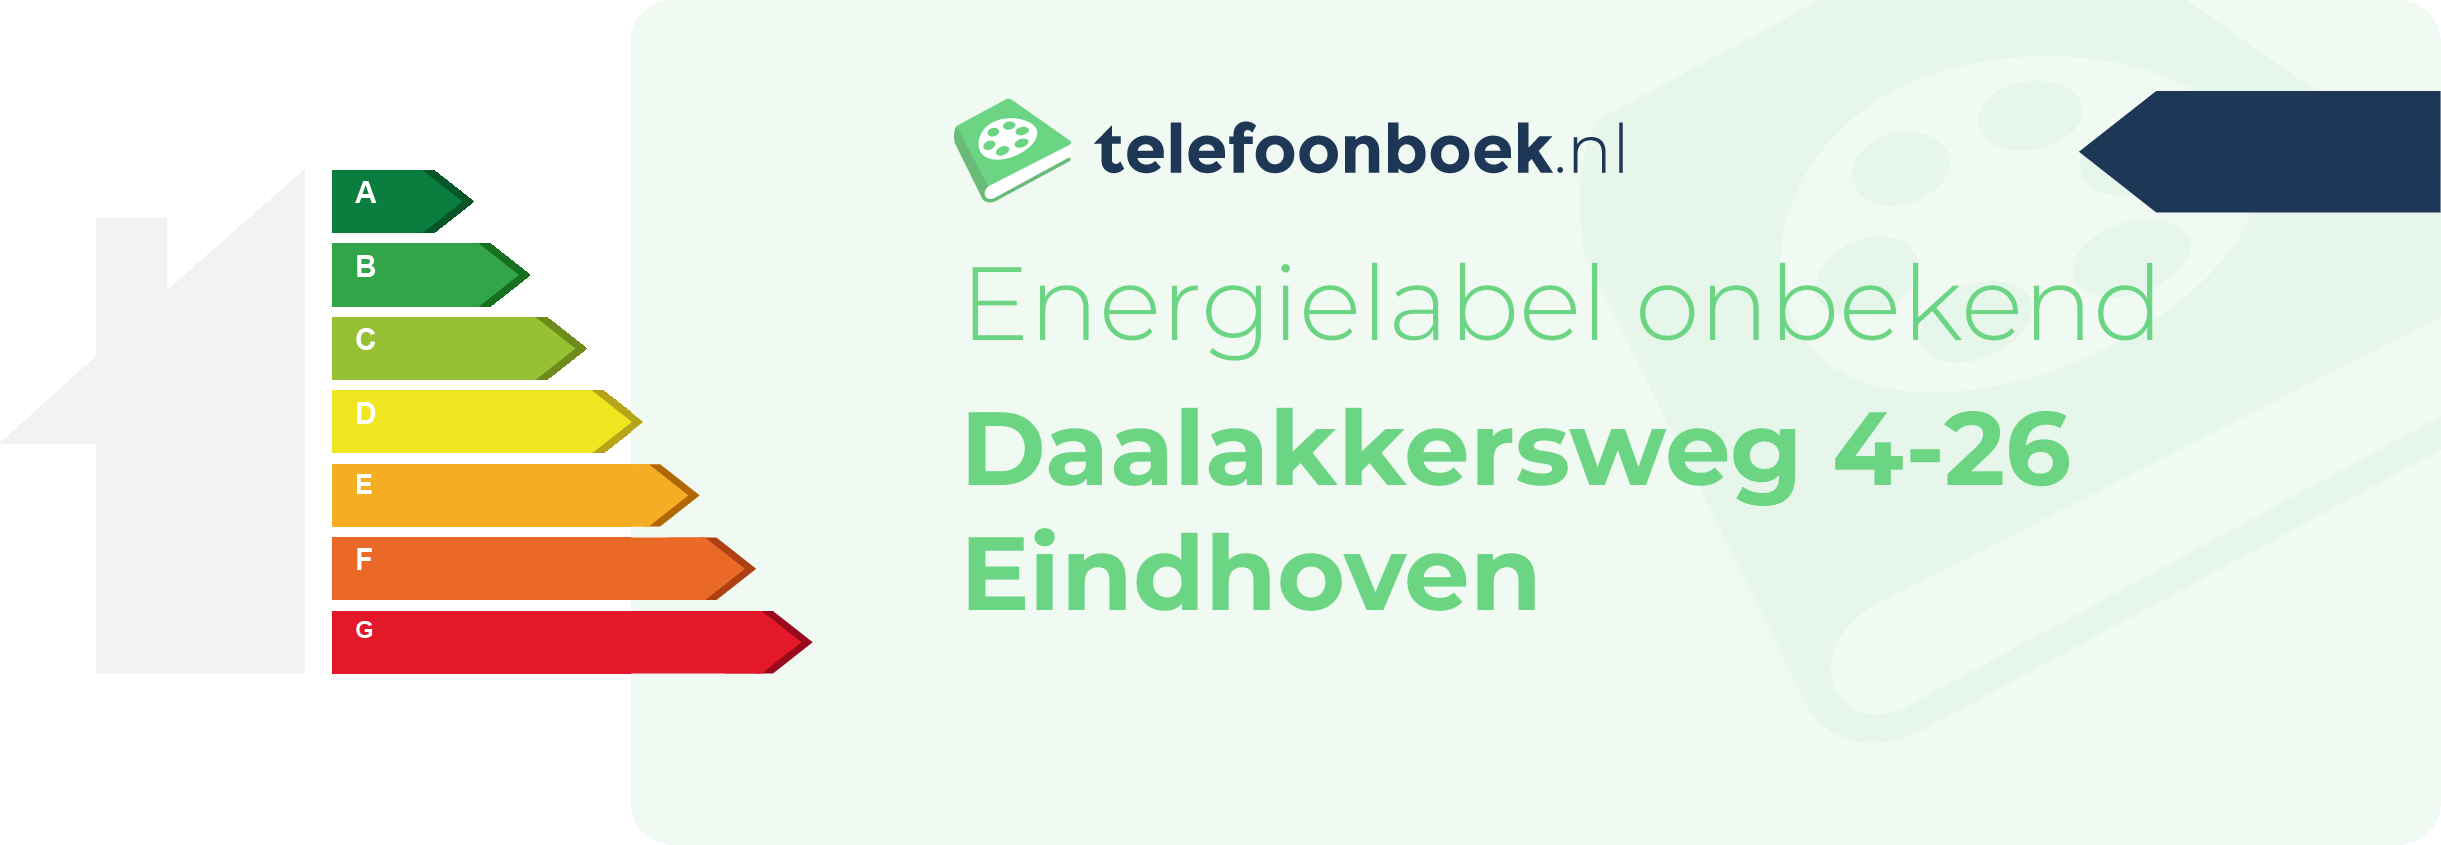 Energielabel Daalakkersweg 4-26 Eindhoven